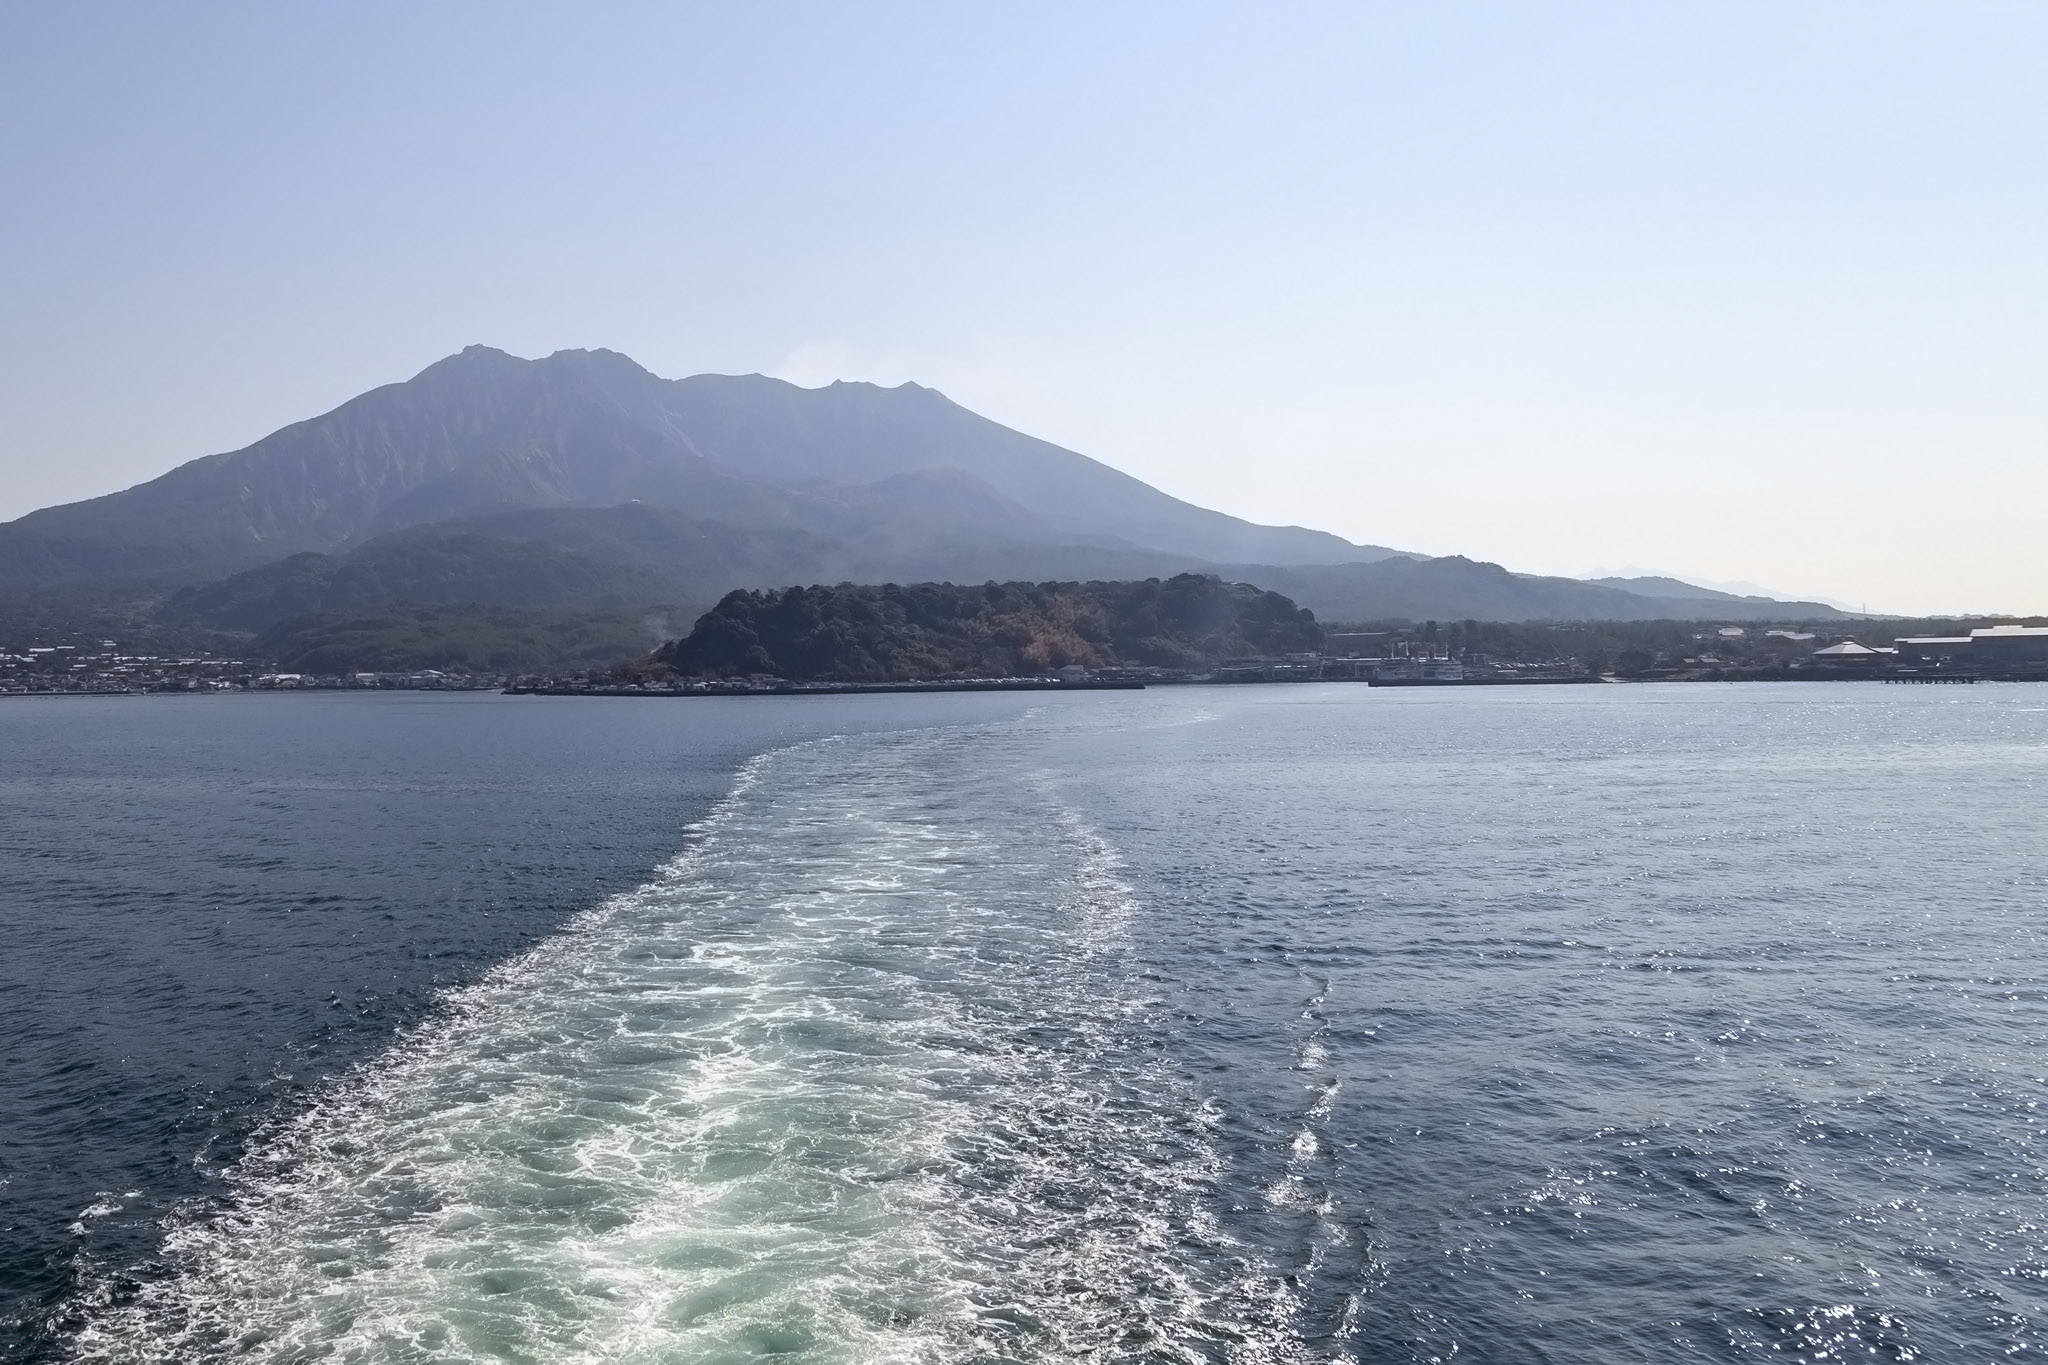 Leaving Sakurajima